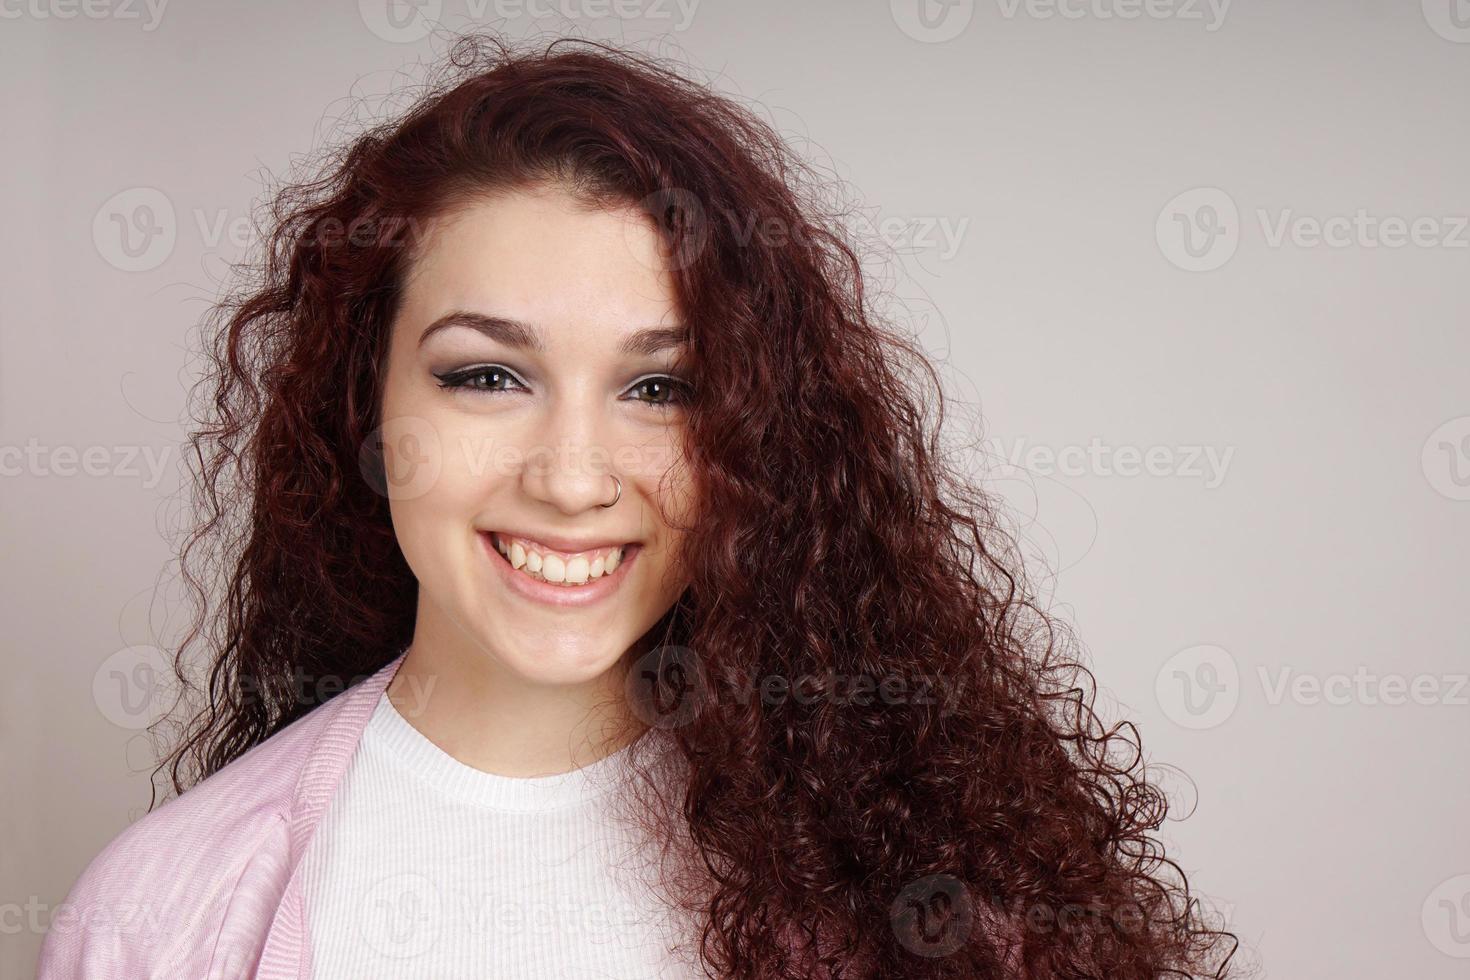 adolescente sonriente con el pelo rizado foto